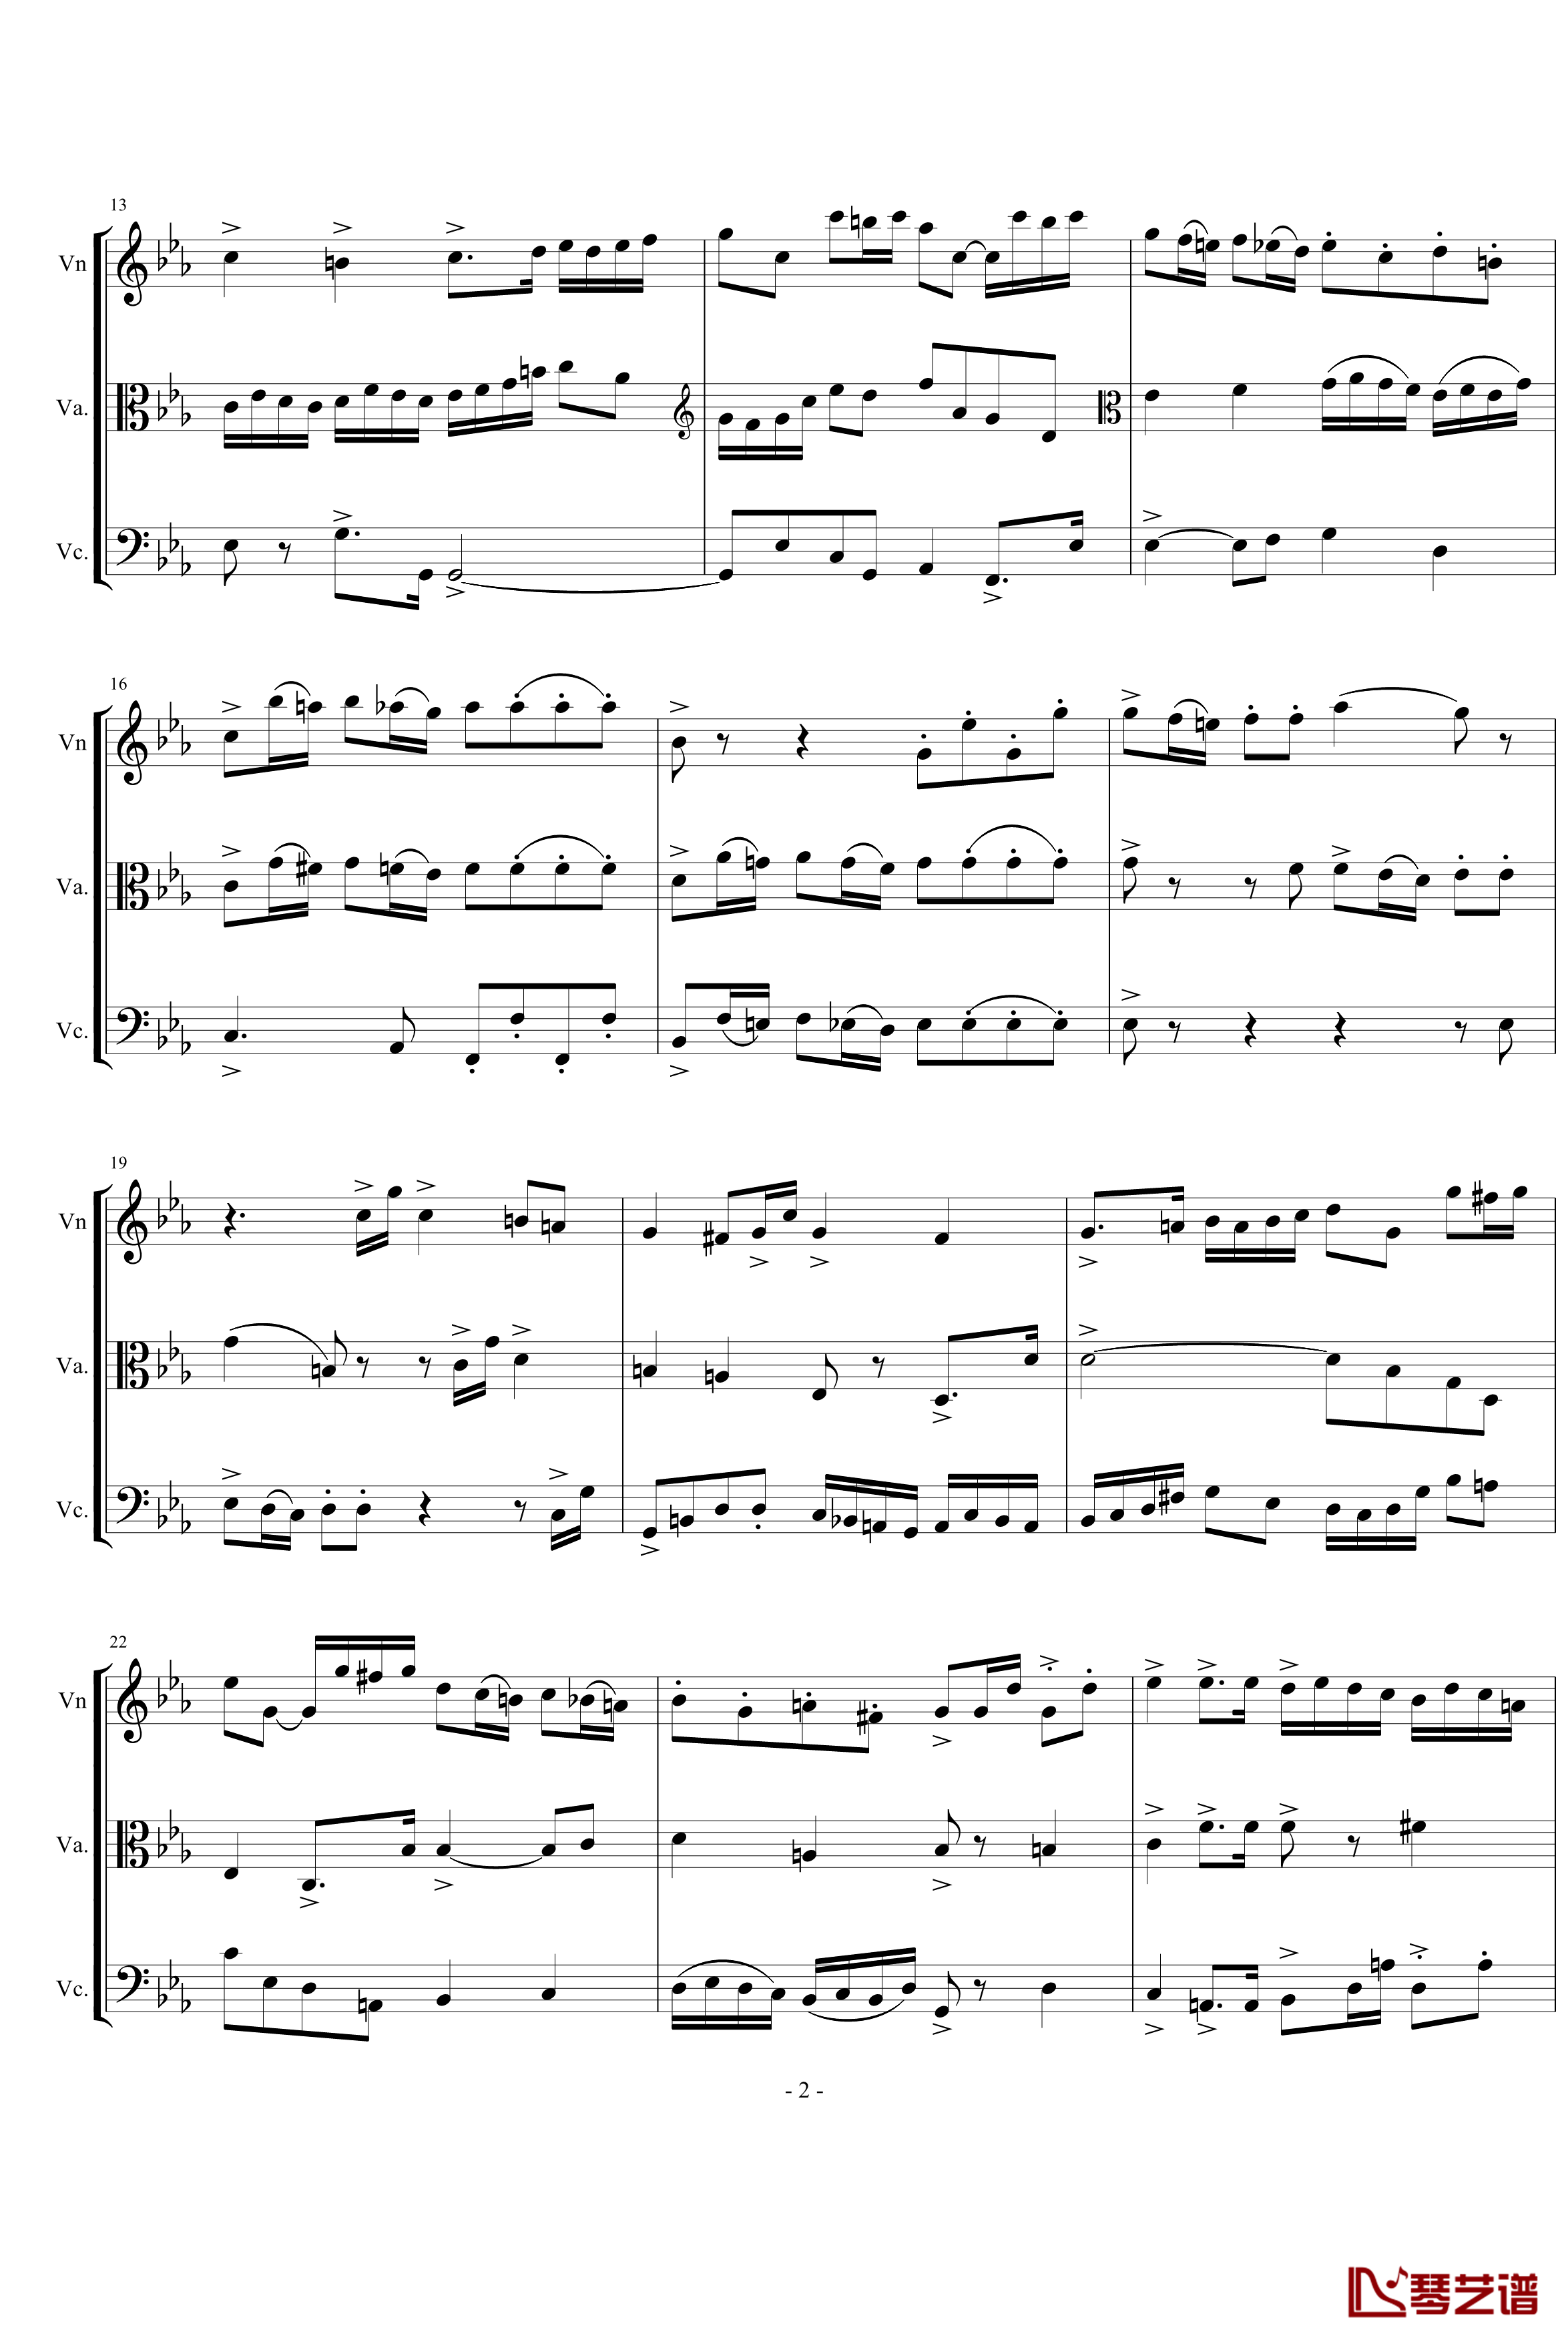 三声部赋格钢琴谱-为弦乐三重奏而作-琴辉2